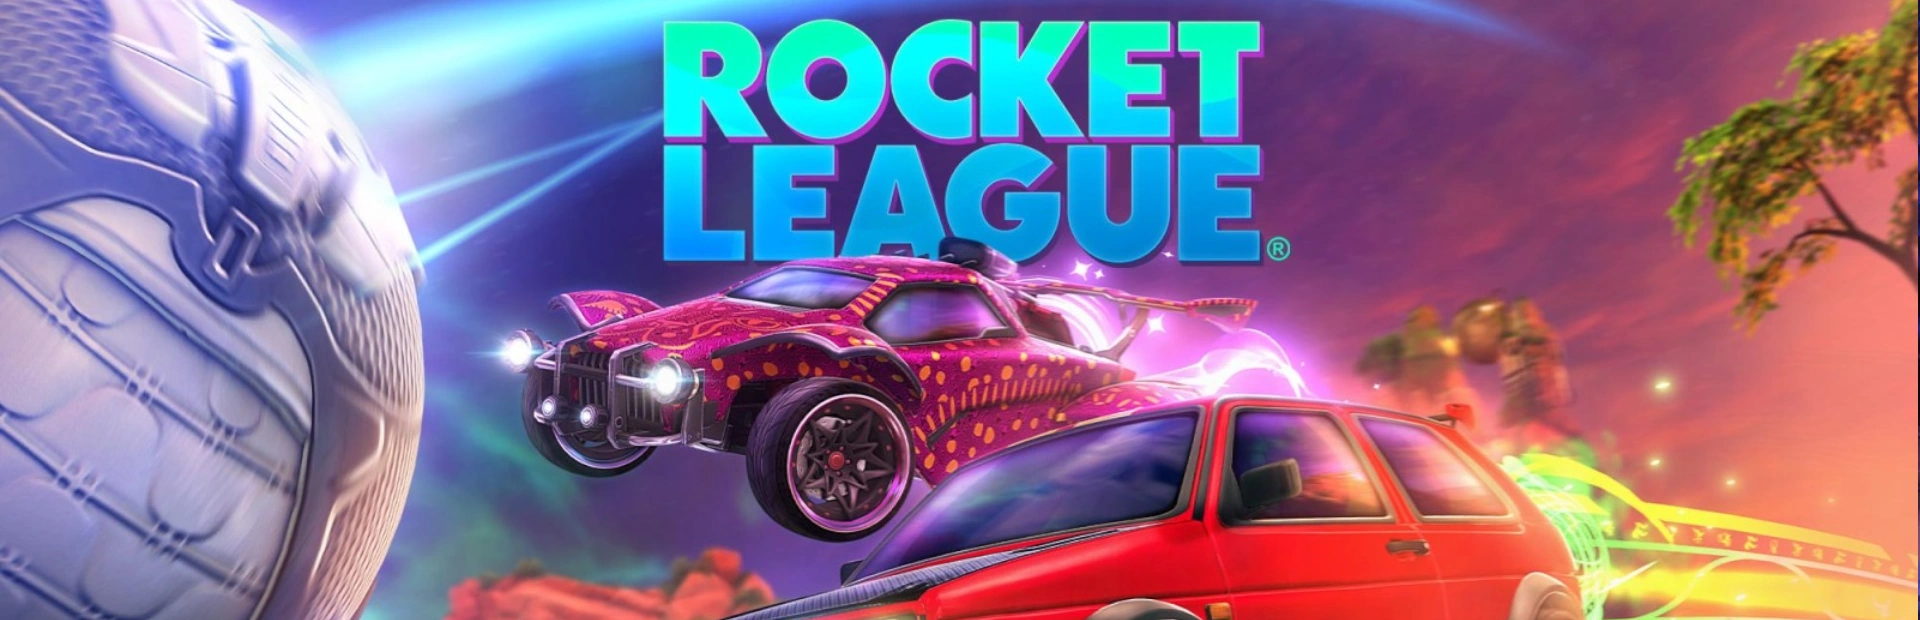 دانلود بازی Rocket League برای کامپیوتر | گیمباتو